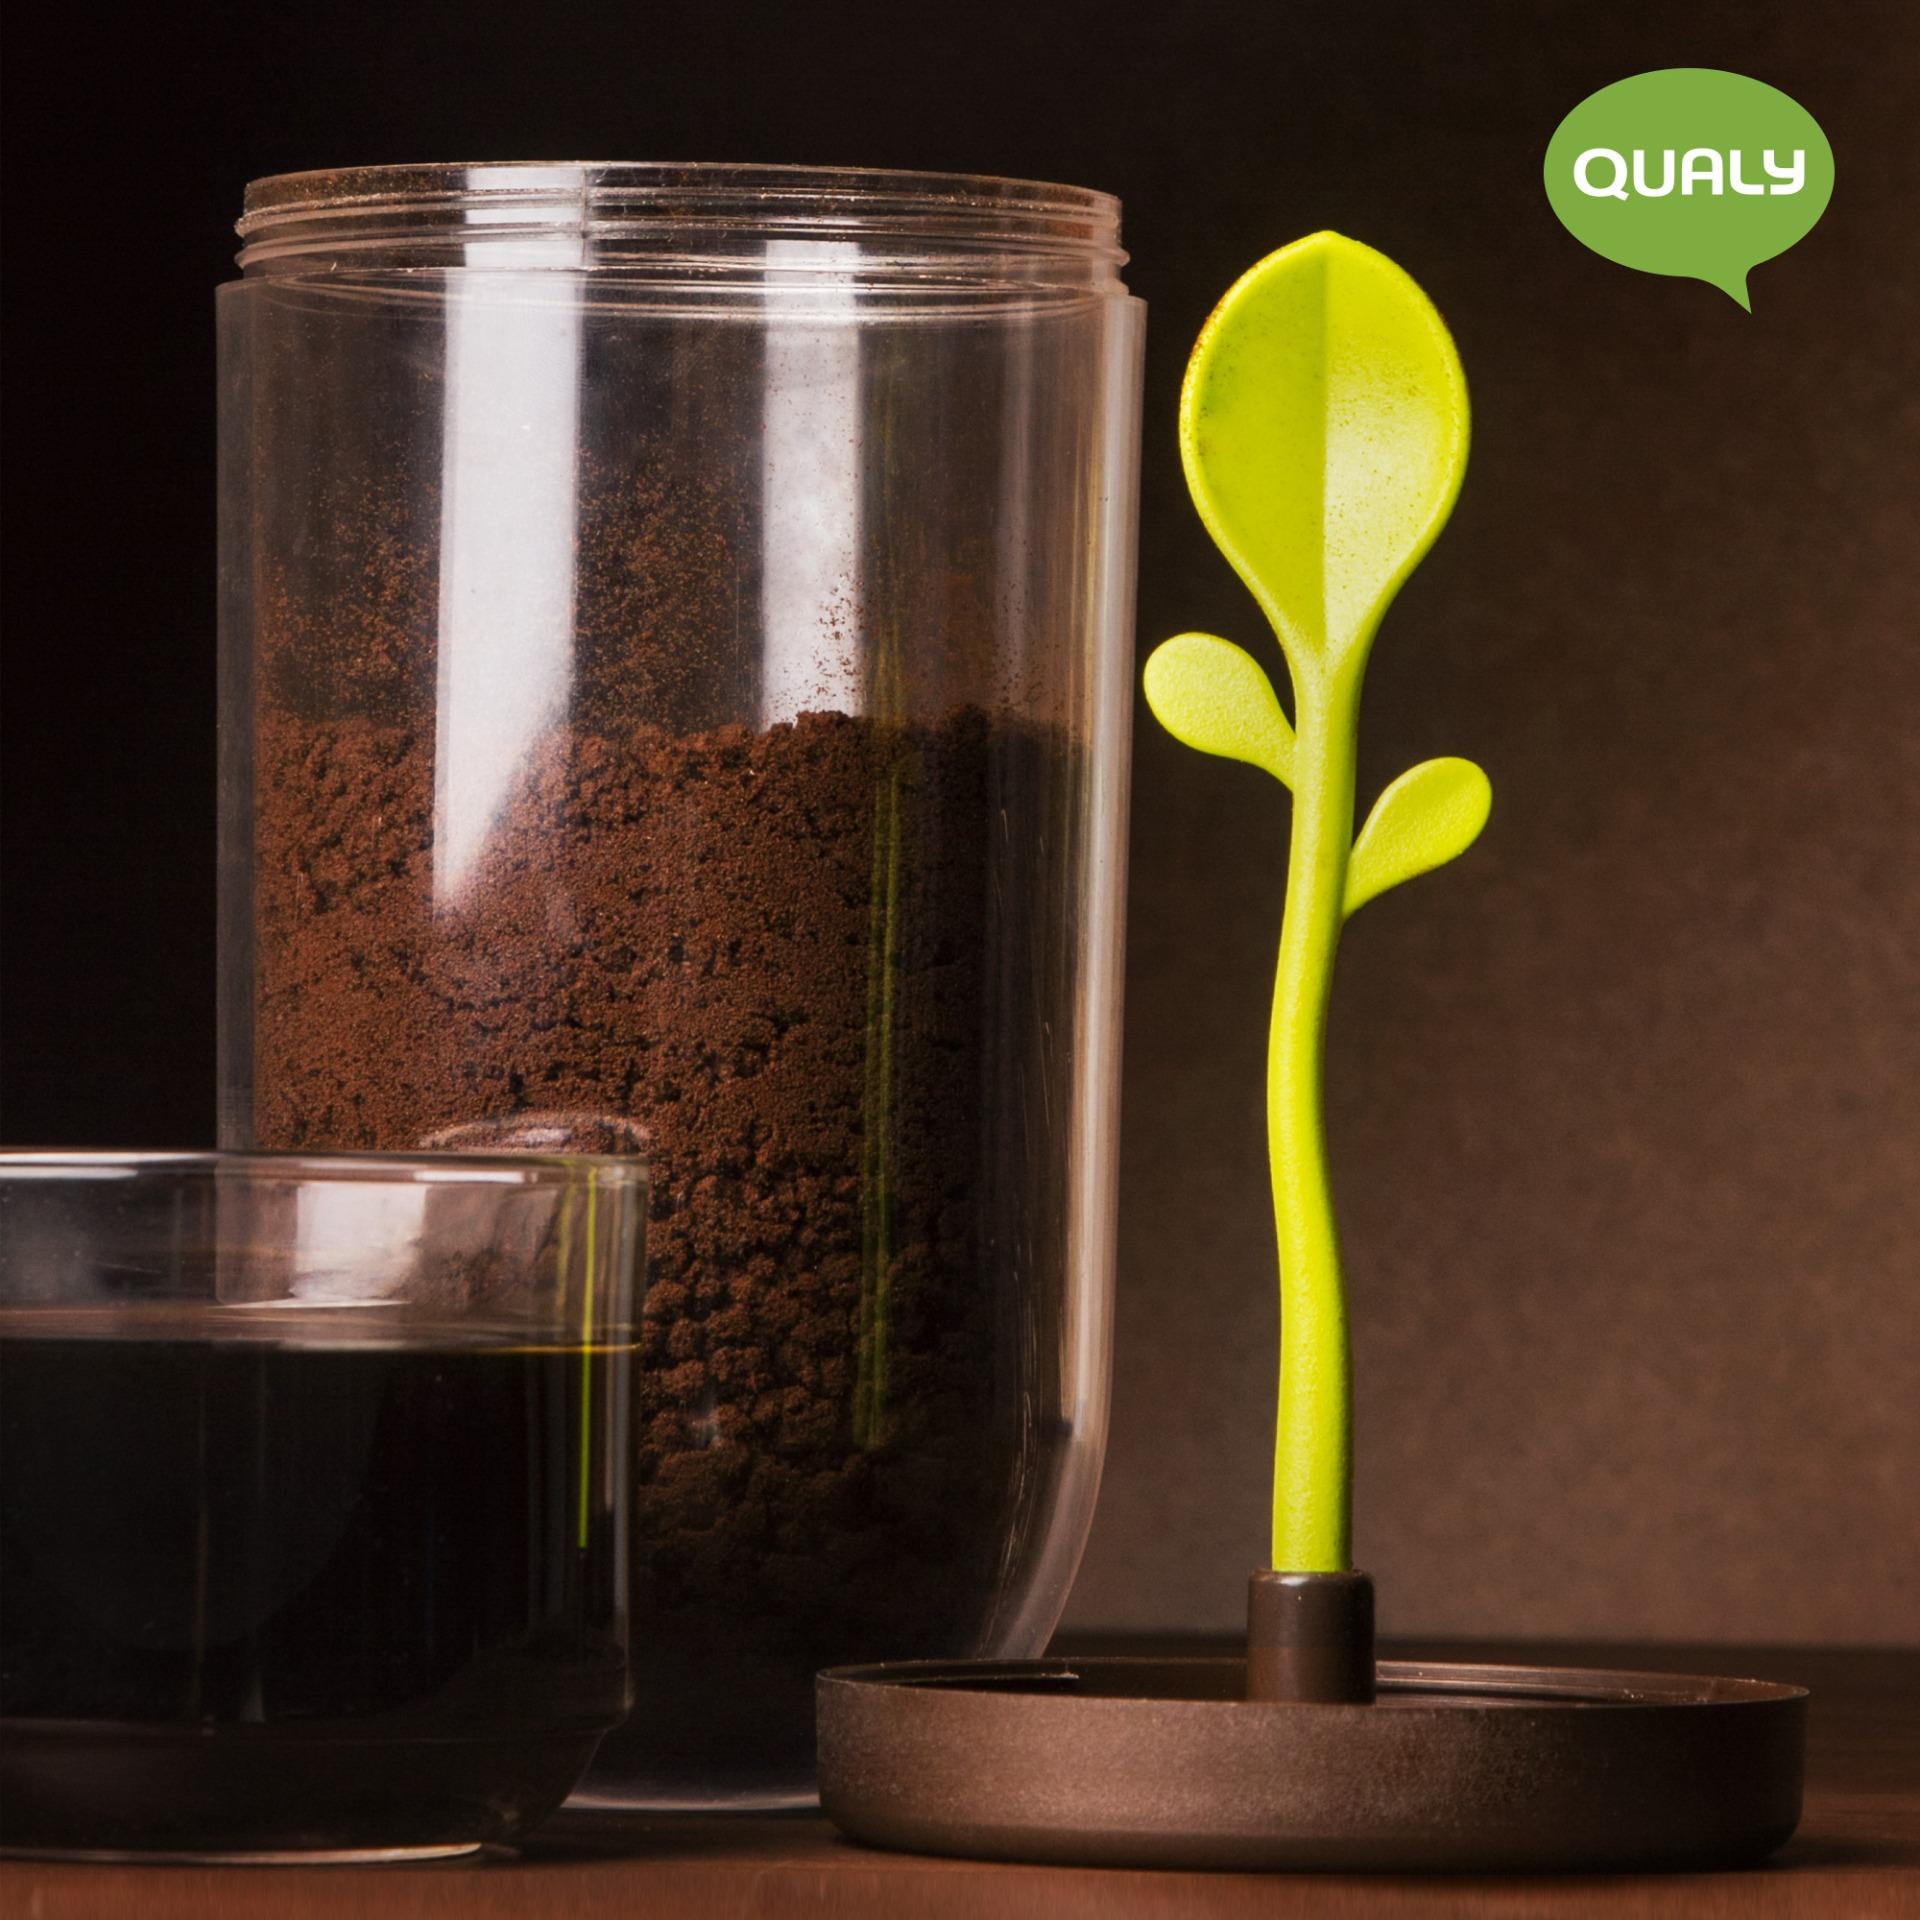 โหล โหลแก้ว โหลอเนกประสงค์ กระปุก กระปุกอเนกประสงค์ ใส่กาแฟ ชา น้ำตาล มีช้อนอยู่ในกระปุก - Qualy Sprout jar